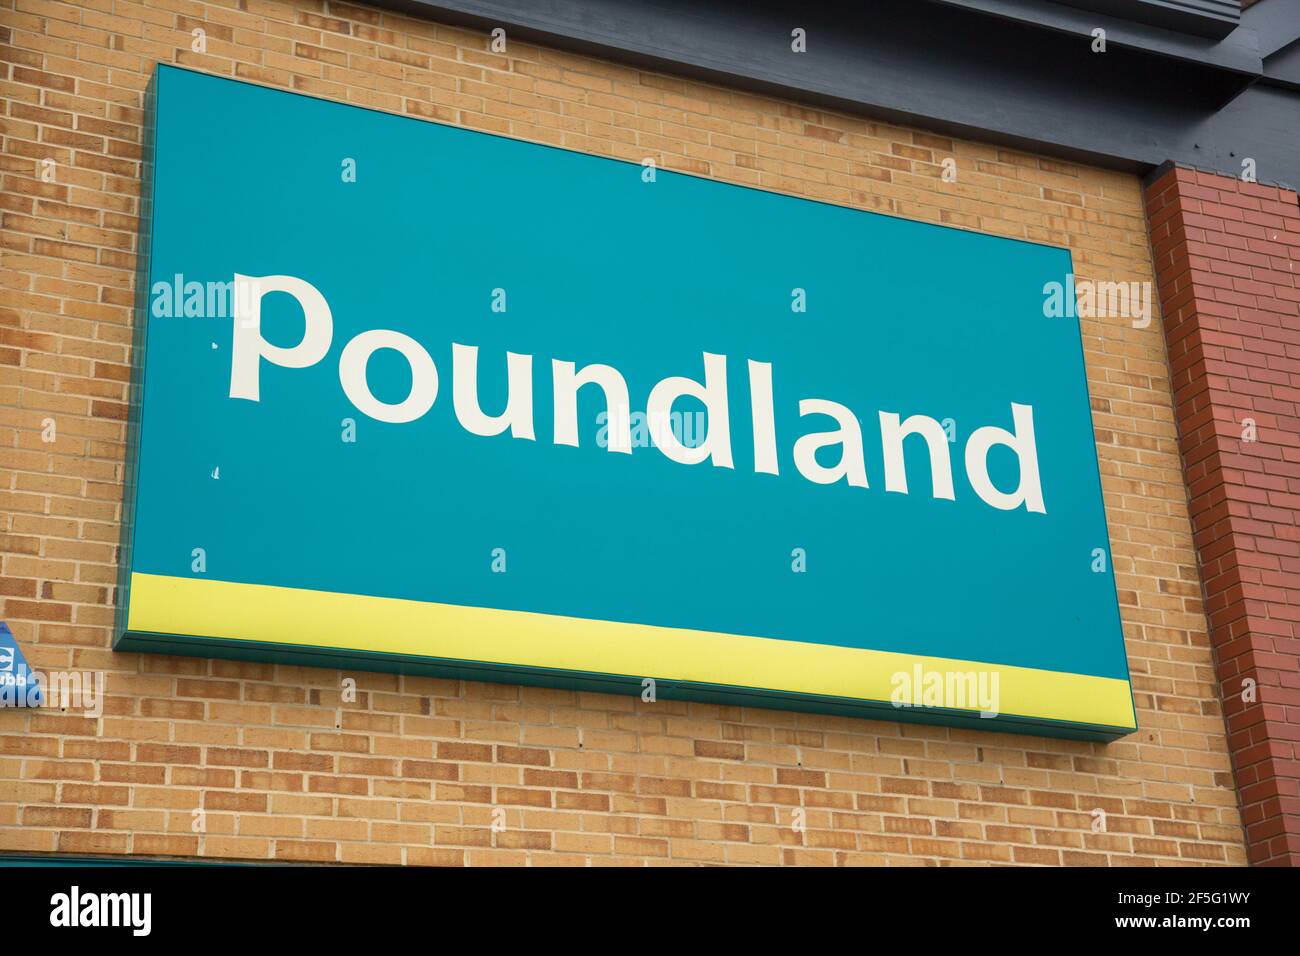 Poundland signage Stock Photo